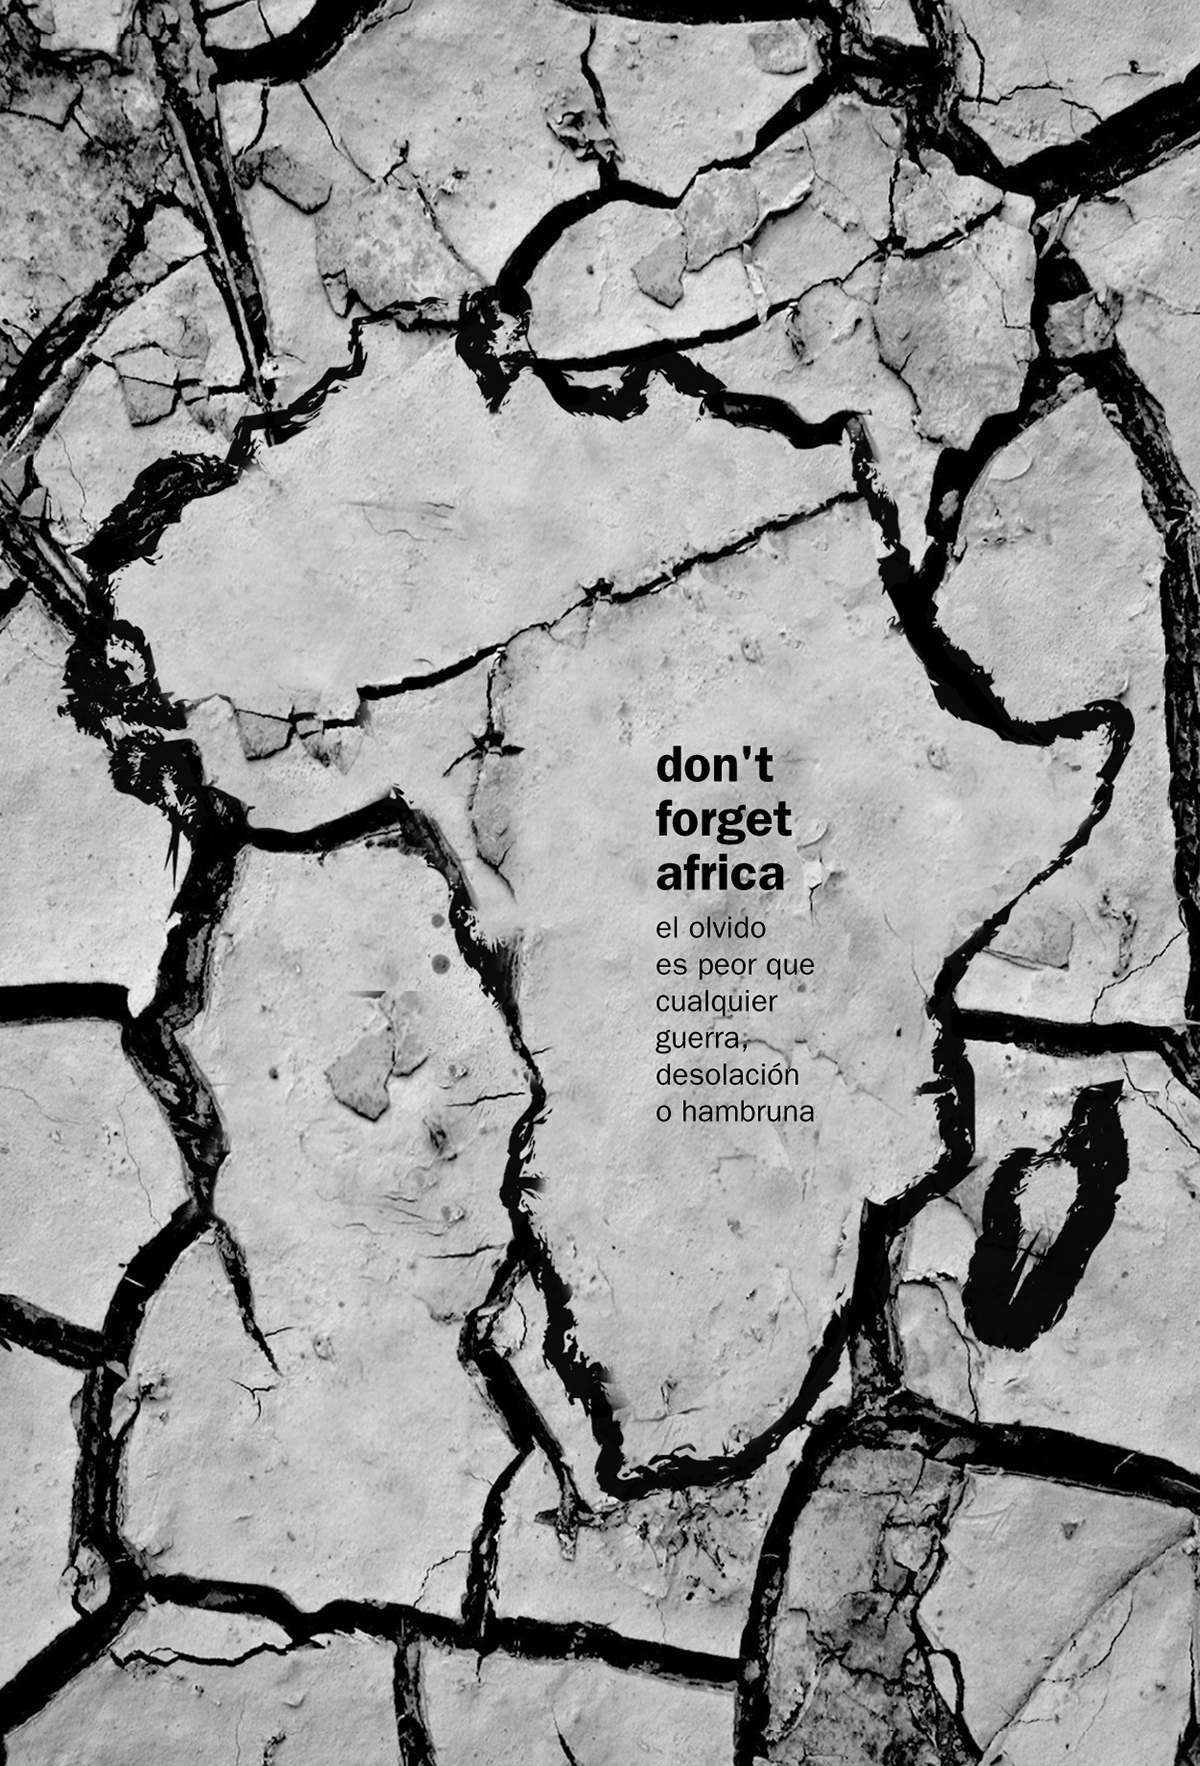 #africa #Poster #afiche   #ong #anuncio #propaganda #campaña #atvertisment